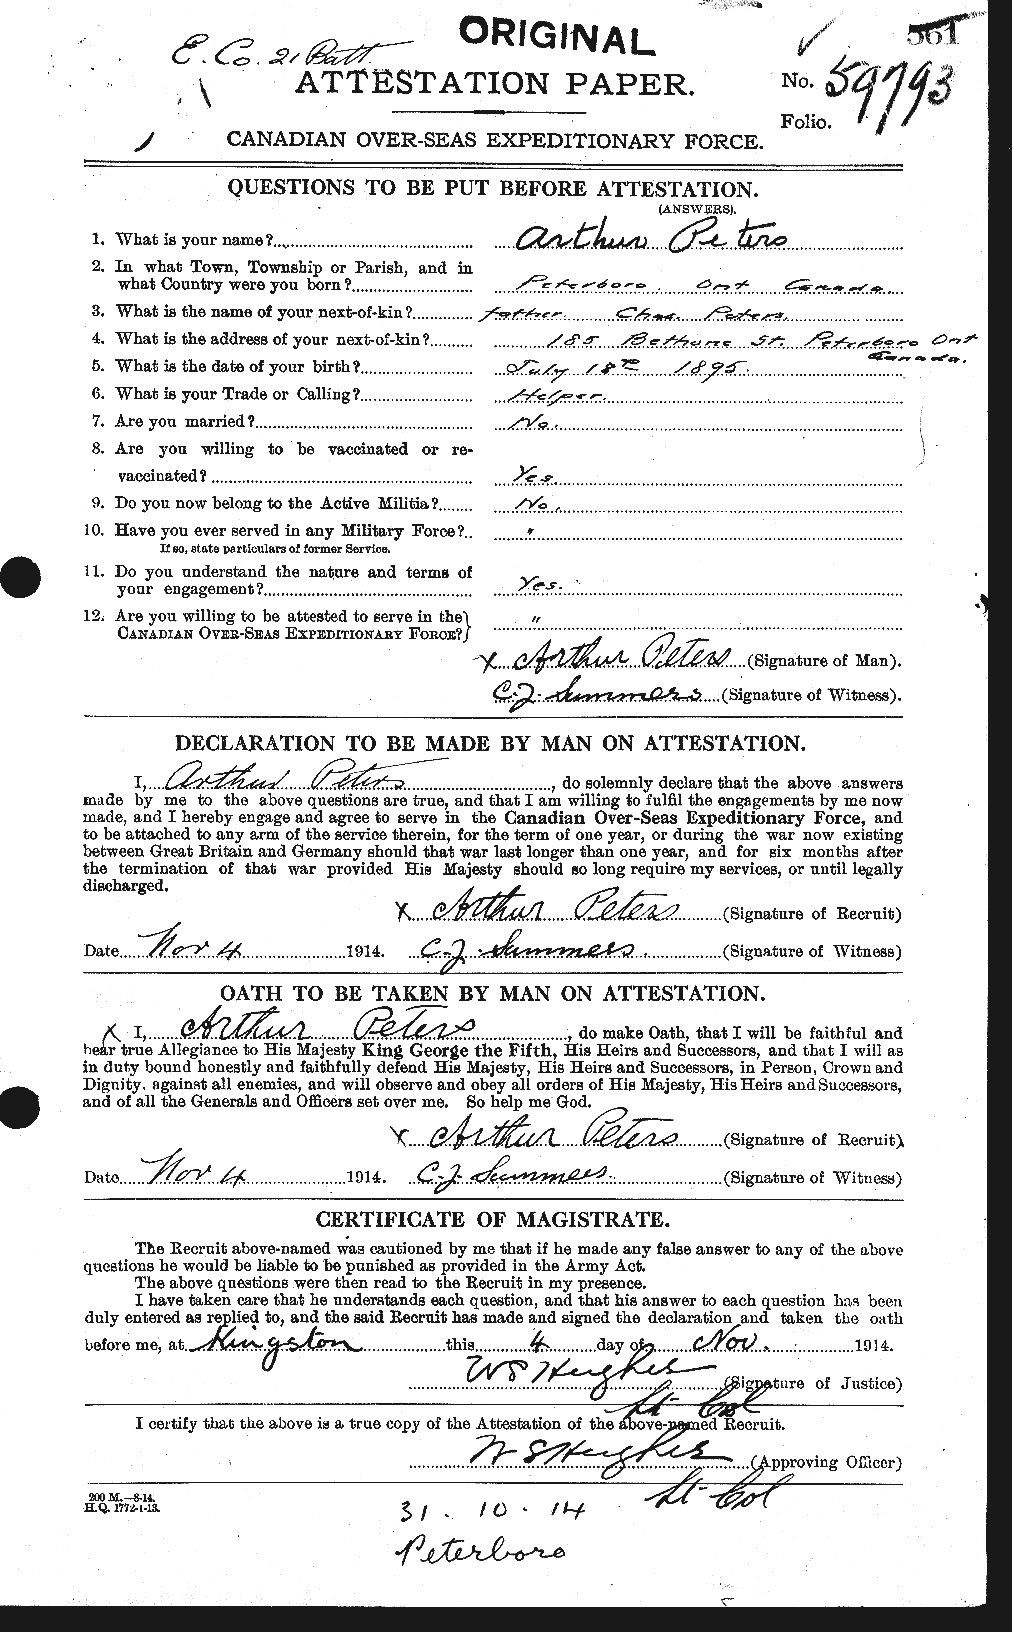 Dossiers du Personnel de la Première Guerre mondiale - CEC 575352a